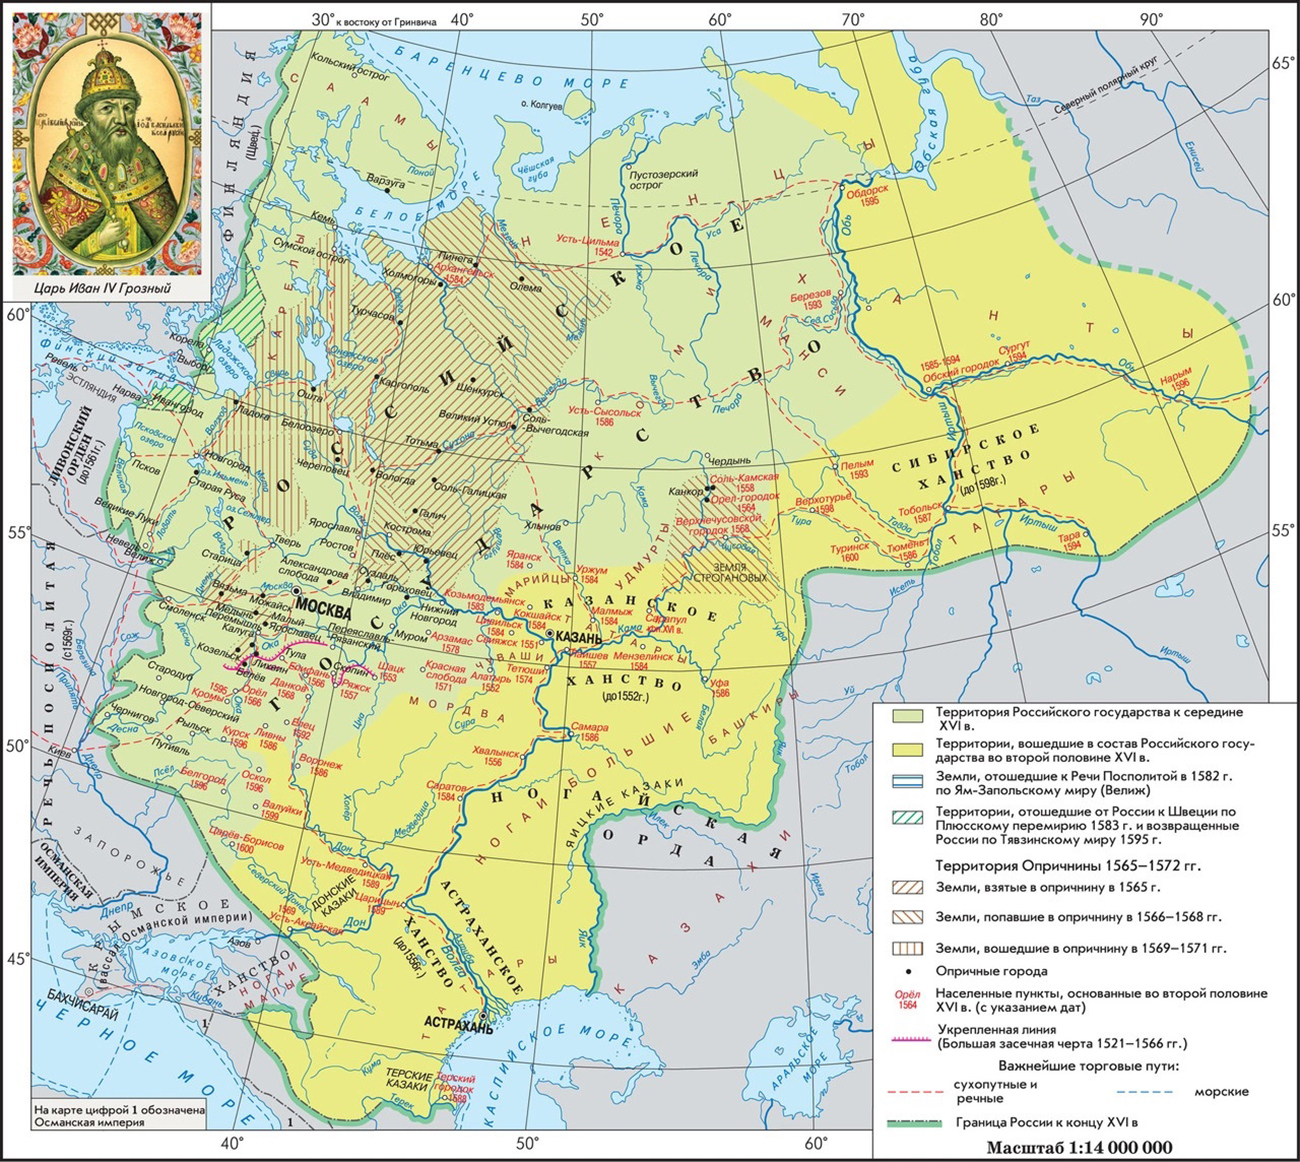 Земщина и опричнина на карте Руси